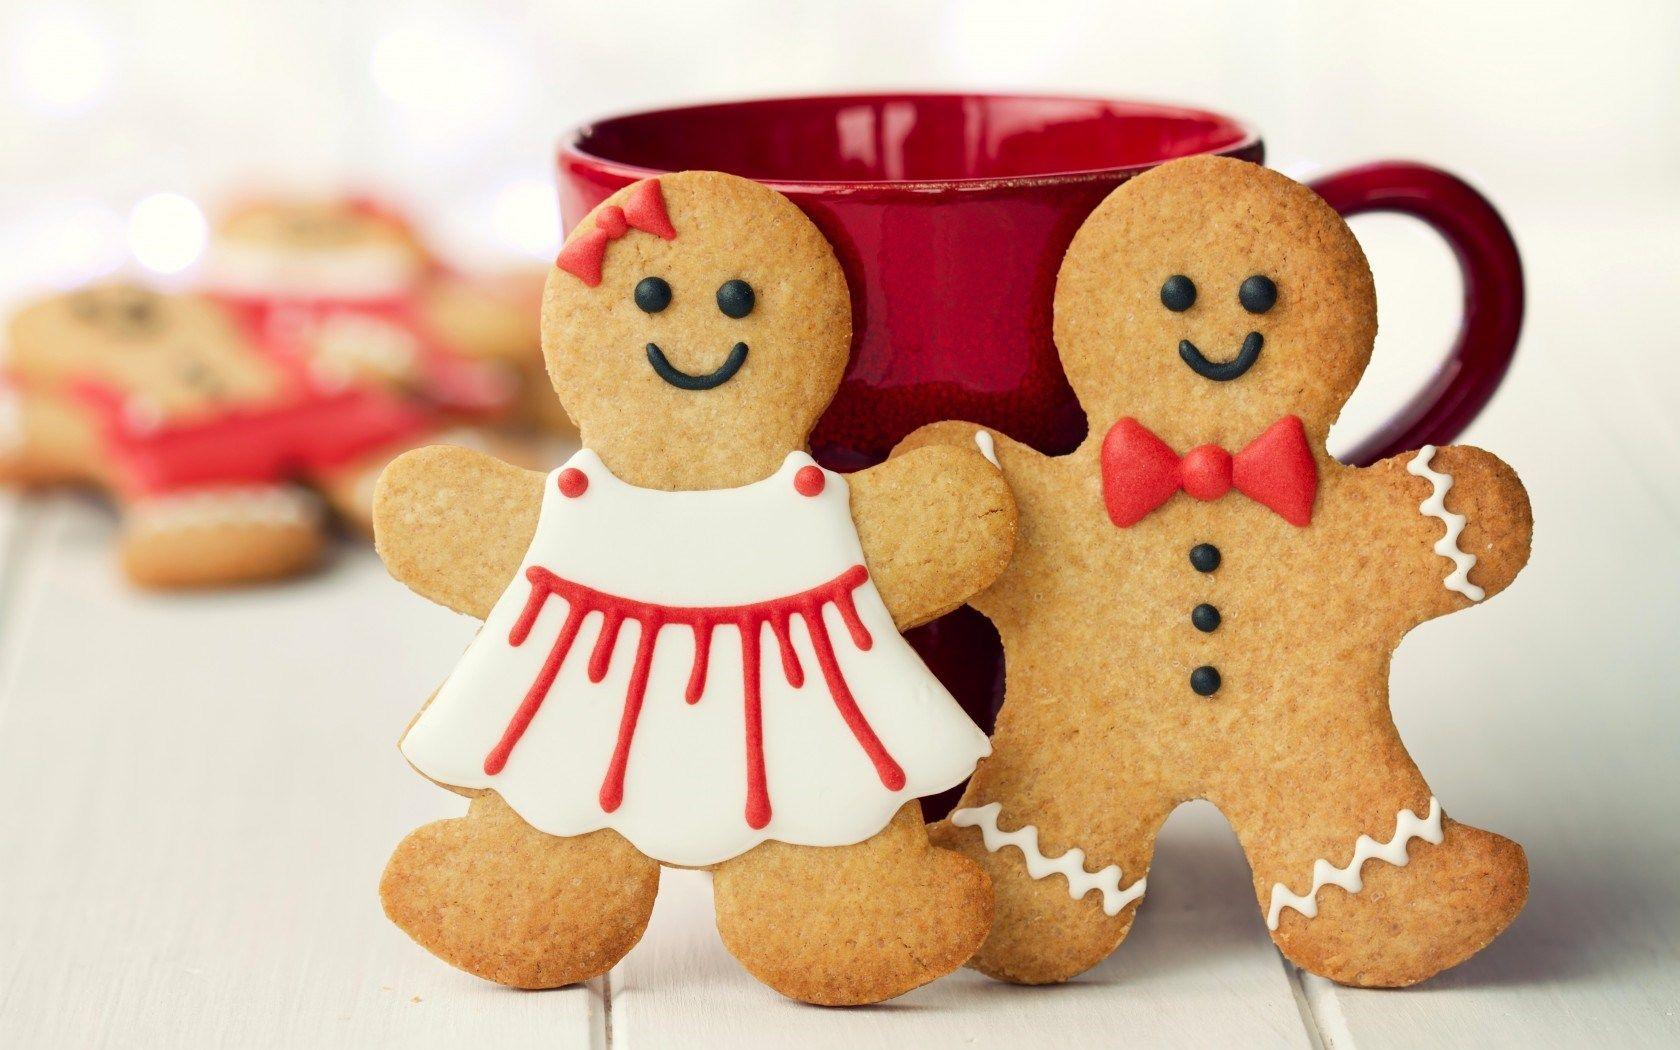 Cute Christmas Cookies wallpaperx1050